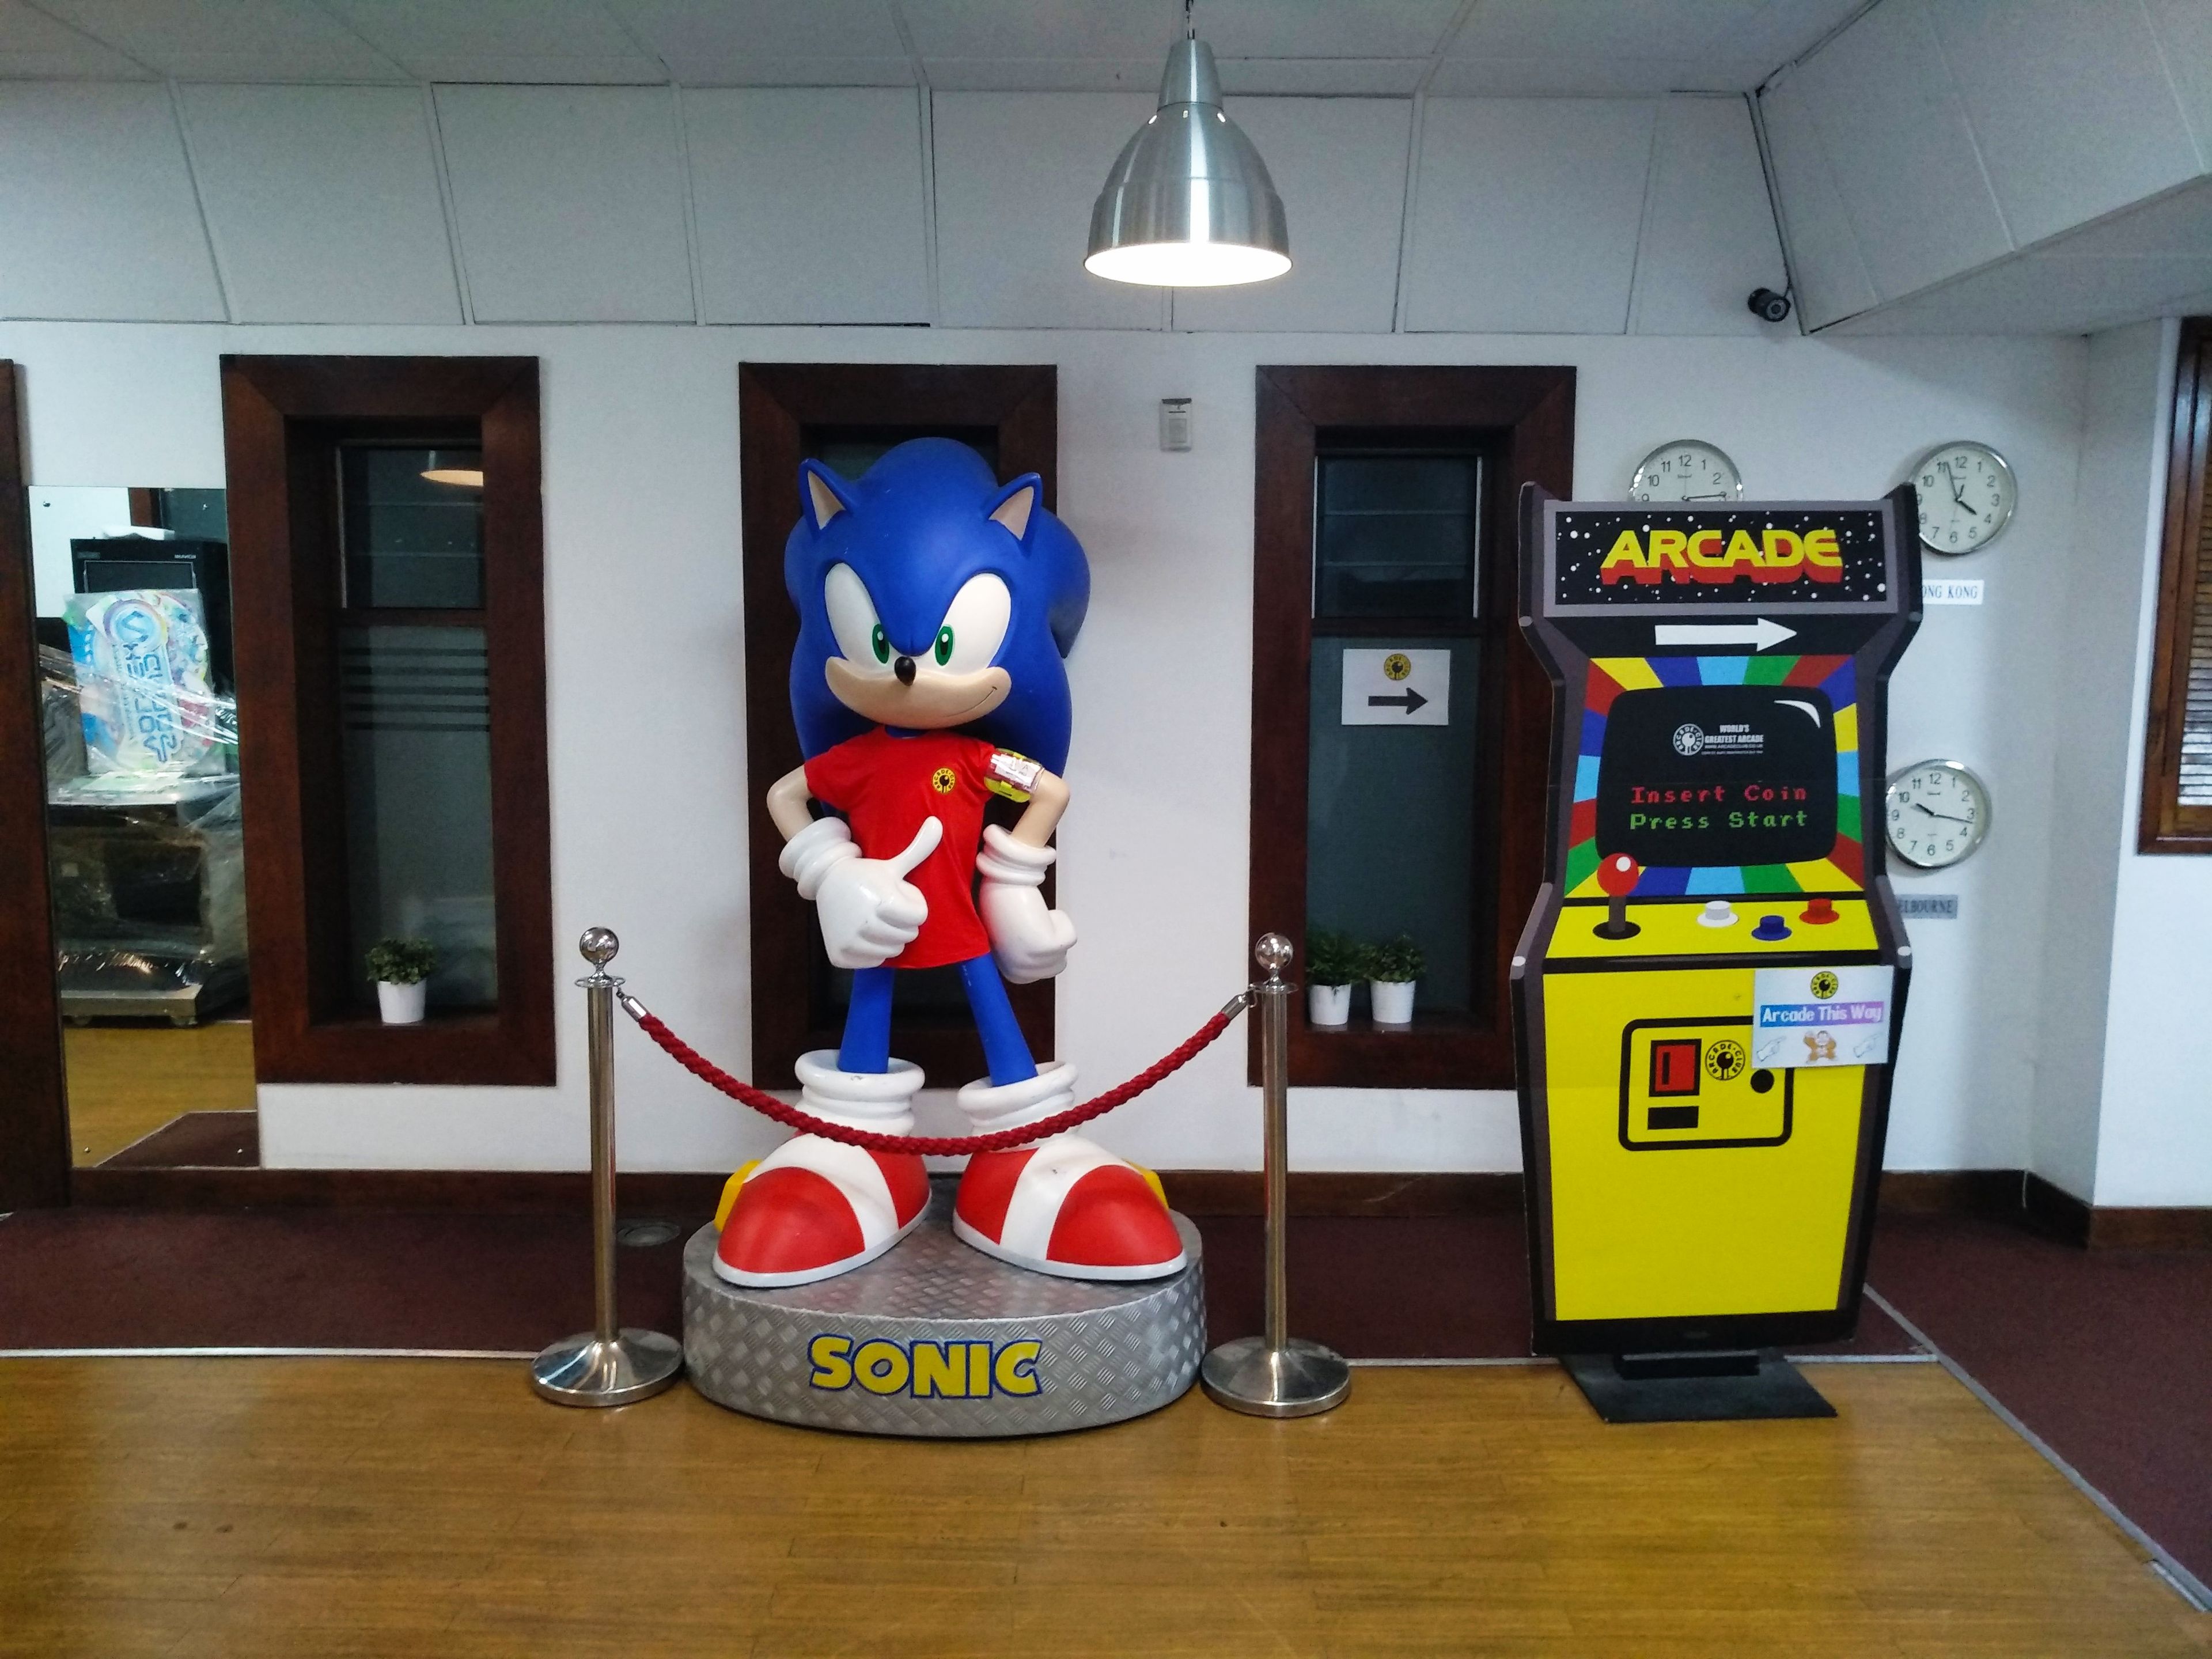 Arcade Club Sonic